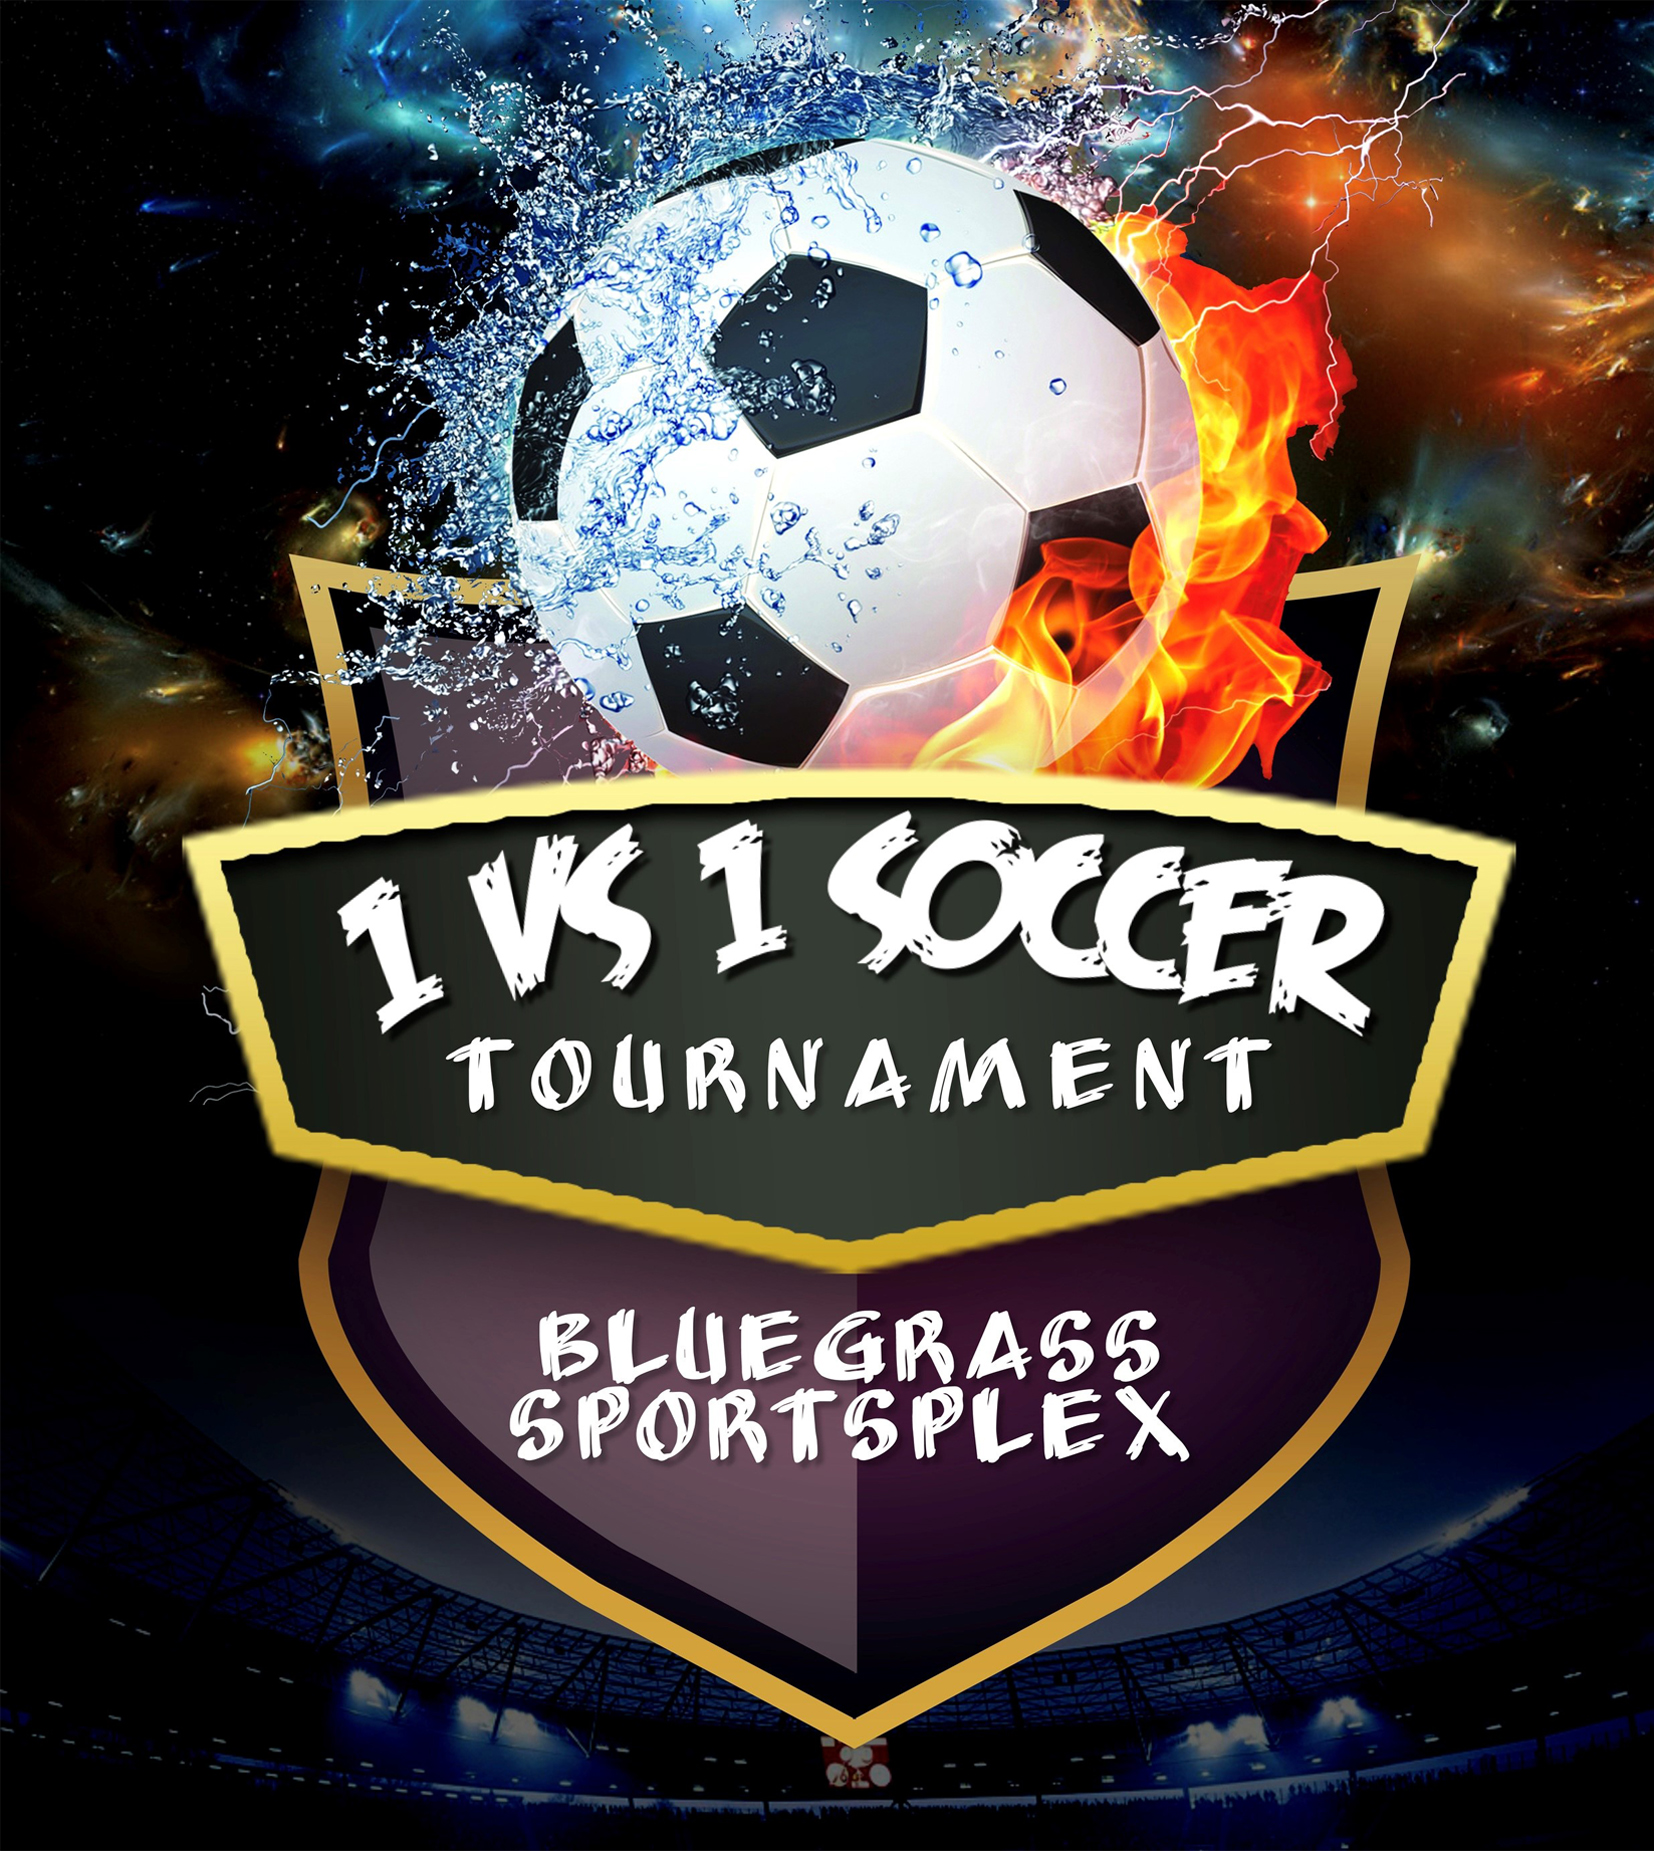 1vs1 Soccer Tournament